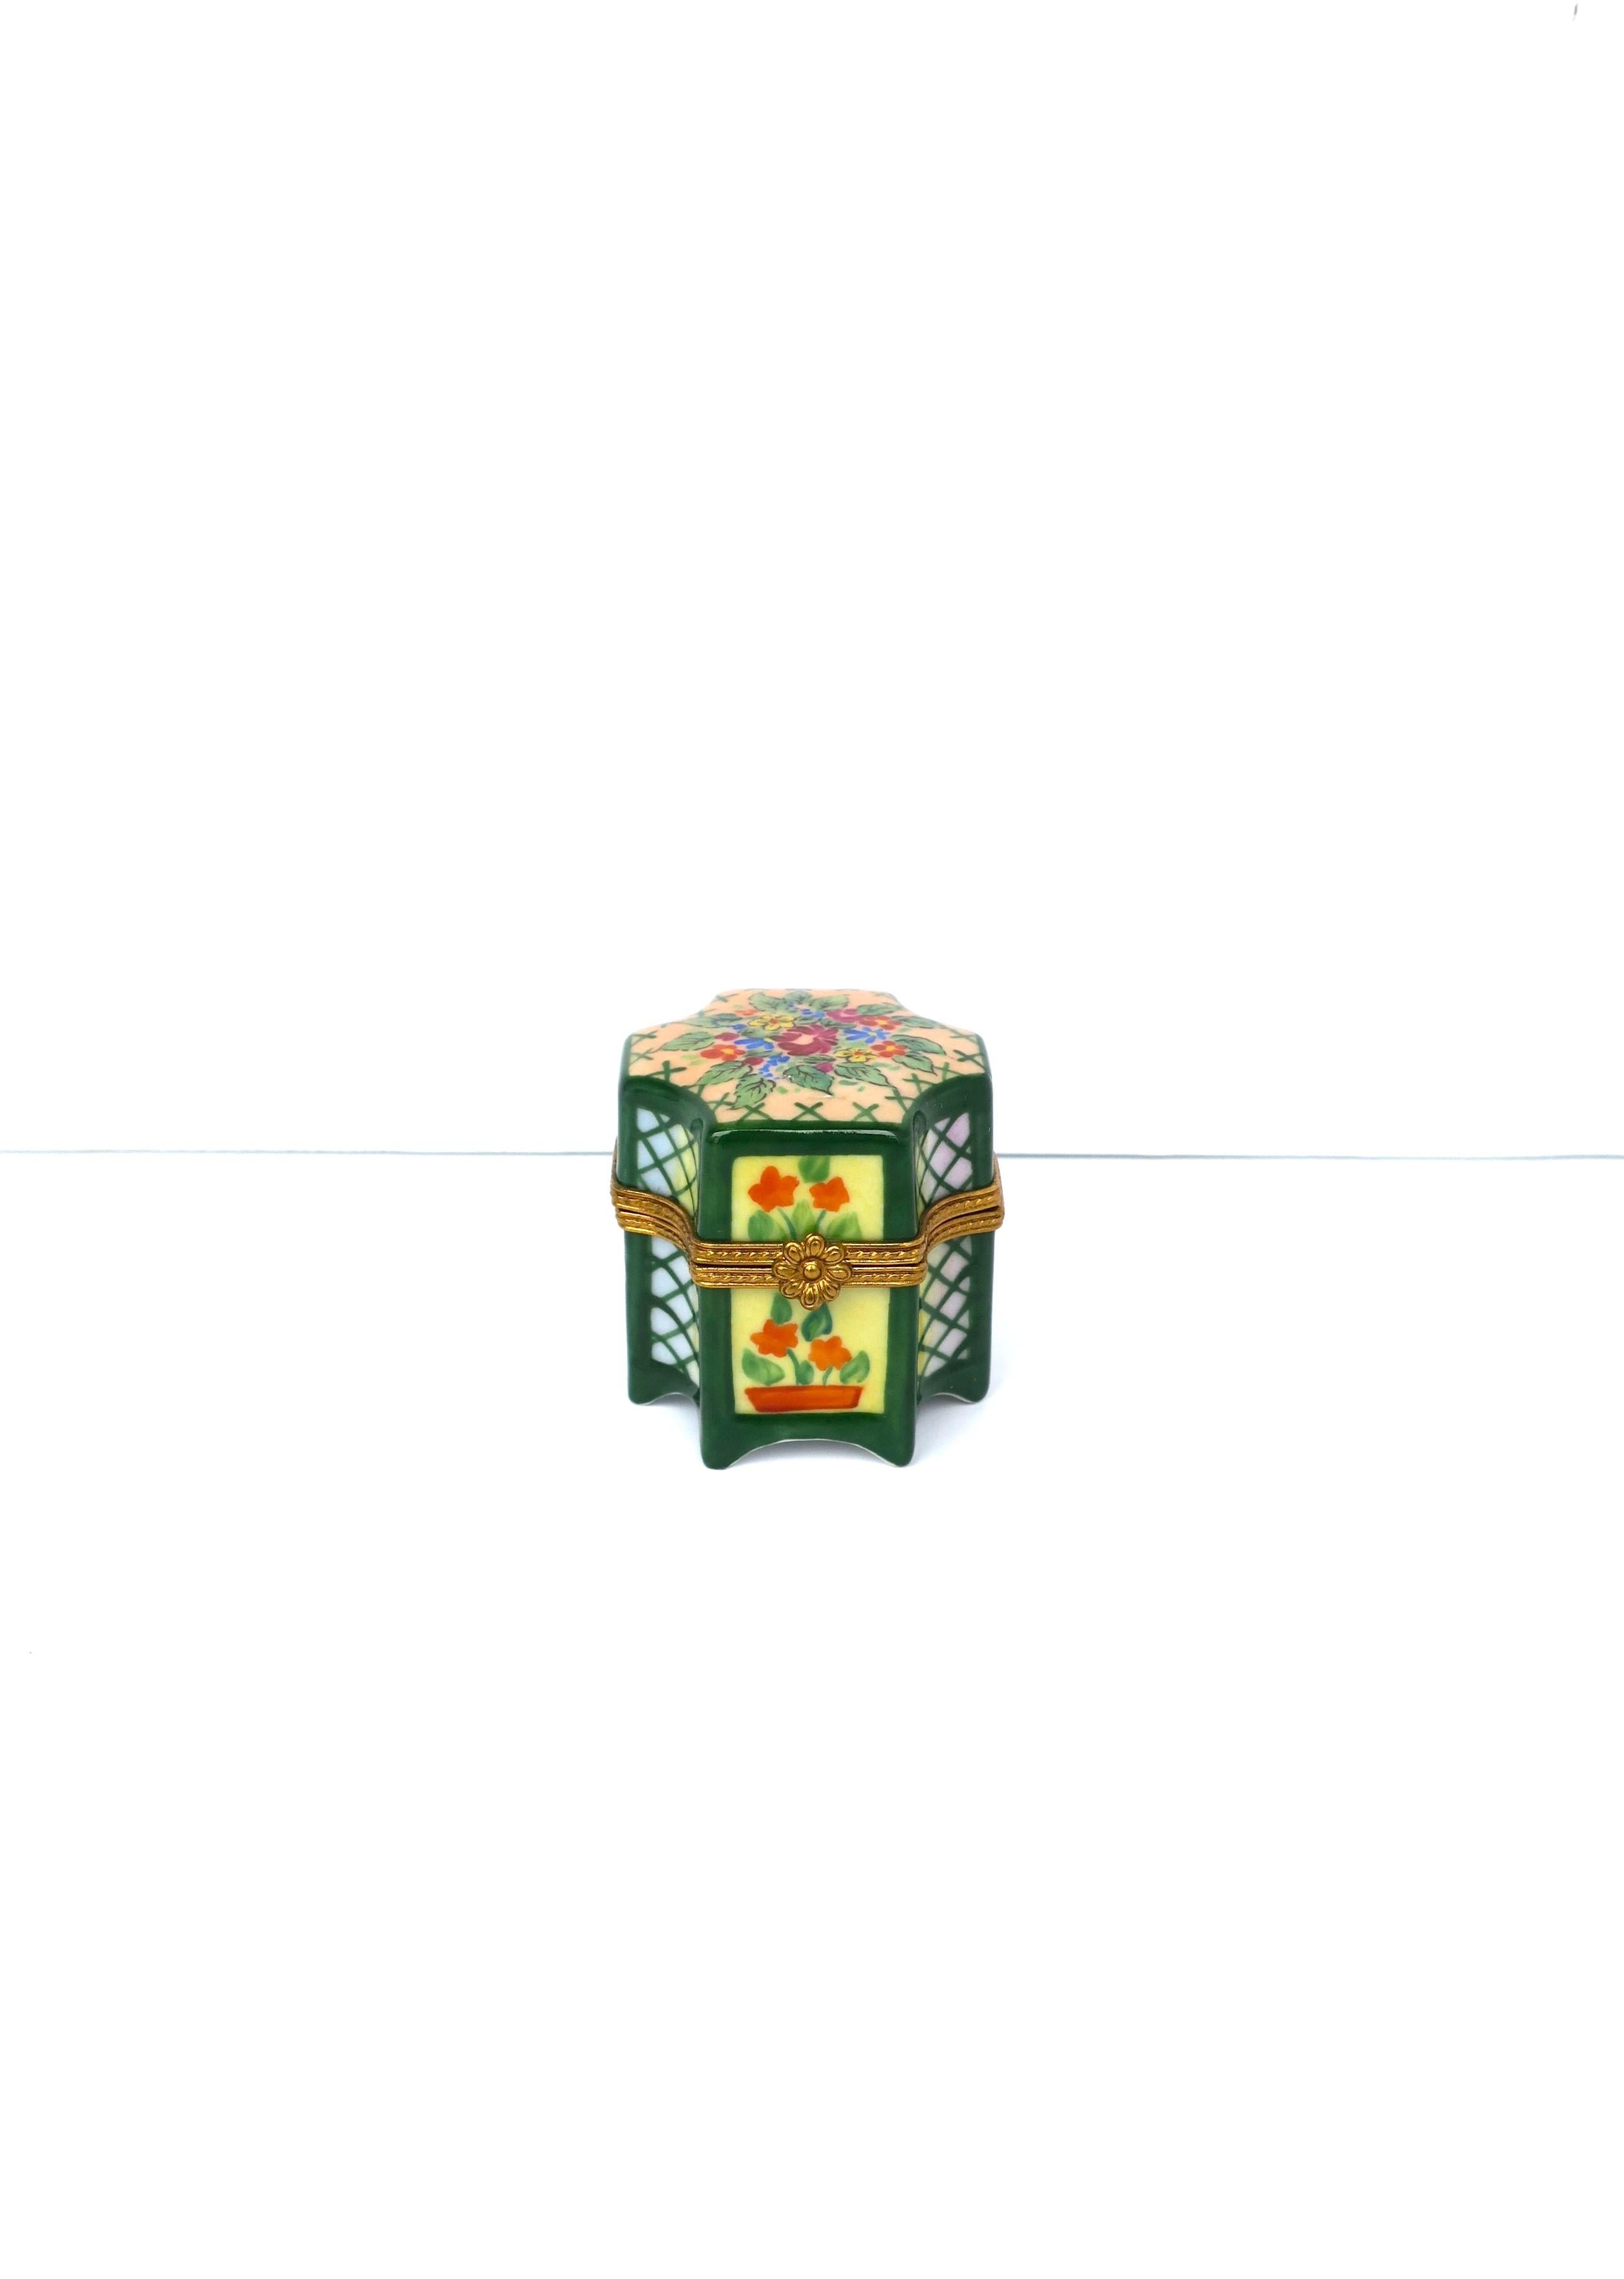 Magnifique boîte à bijoux ou décorative en porcelaine française peinte à la main, avec charnière en laiton doré, vers le milieu du XXe siècle, Limoges, France. Une belle boîte en porcelaine avec des fleurs et des feuilles peintes à la main couvrant